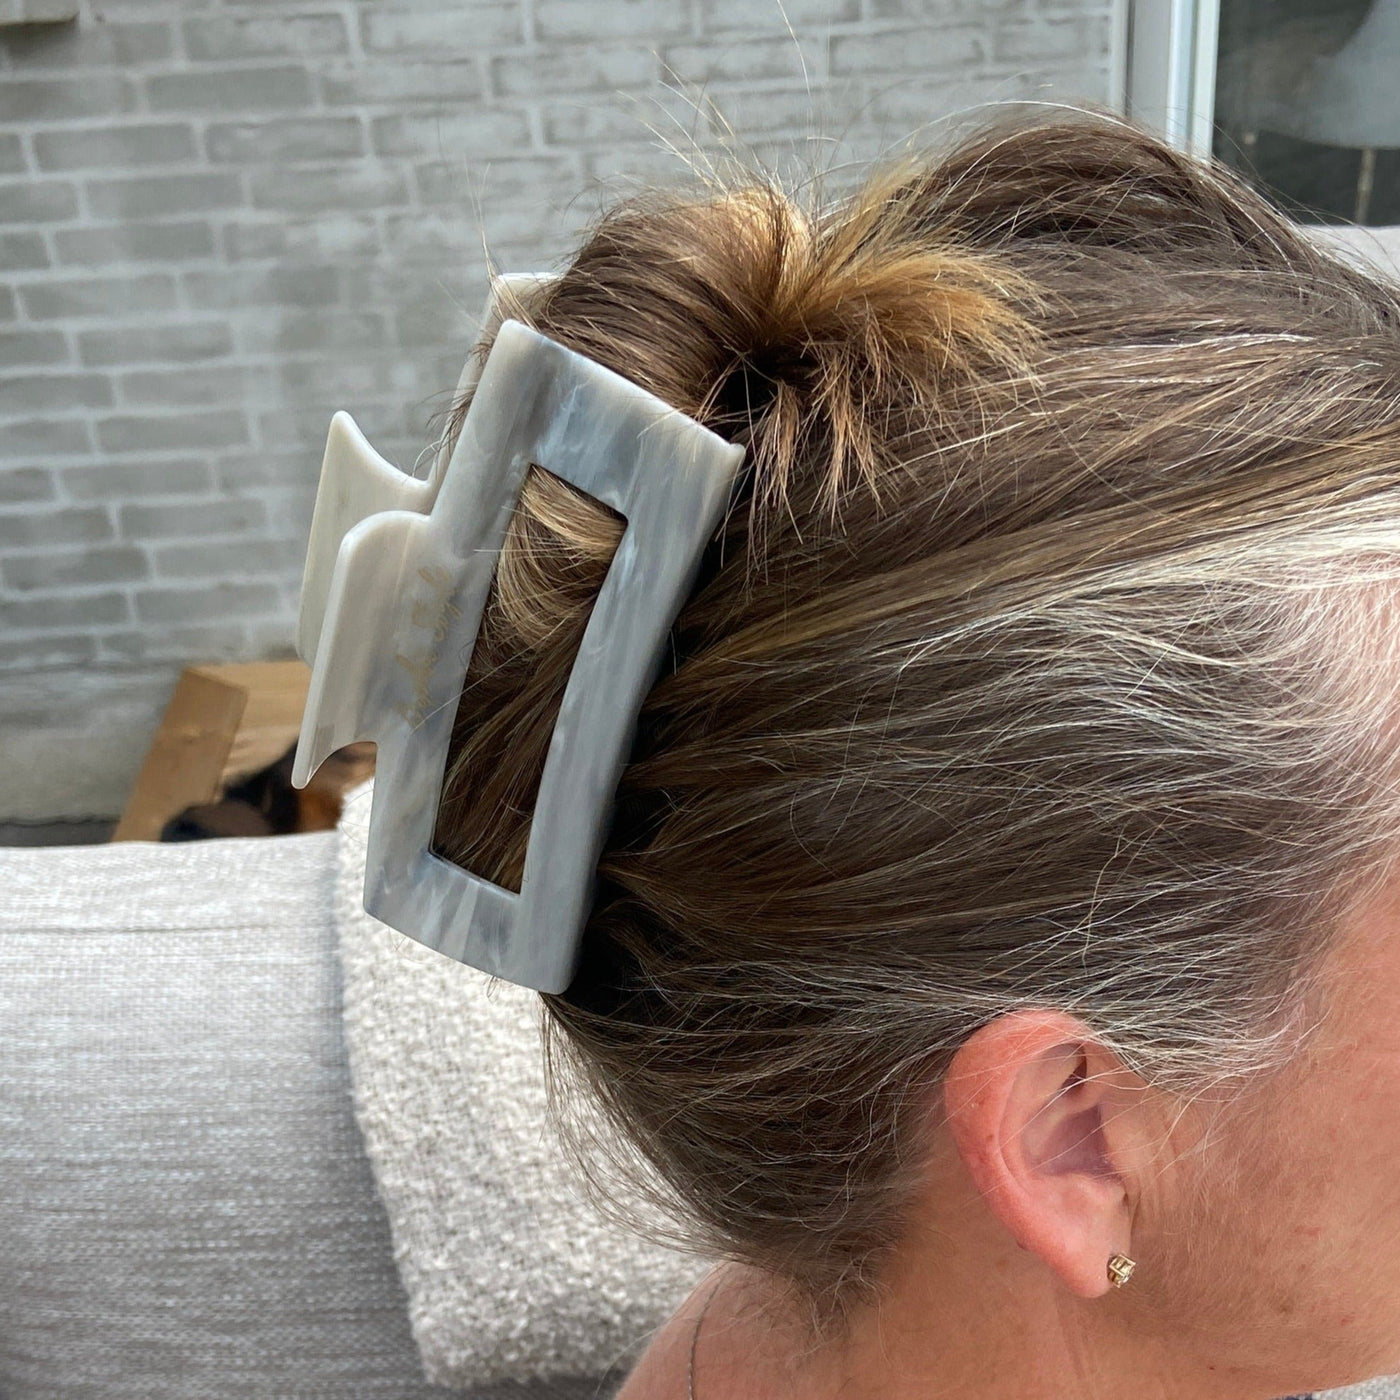 Udforsk hårklemmer - Lena grå hårklemme fra Orphic Style – en elegant hårklemme, der kombinerer stil, funktionalitet og enkelhed - hårklemmer designet til tykt hår